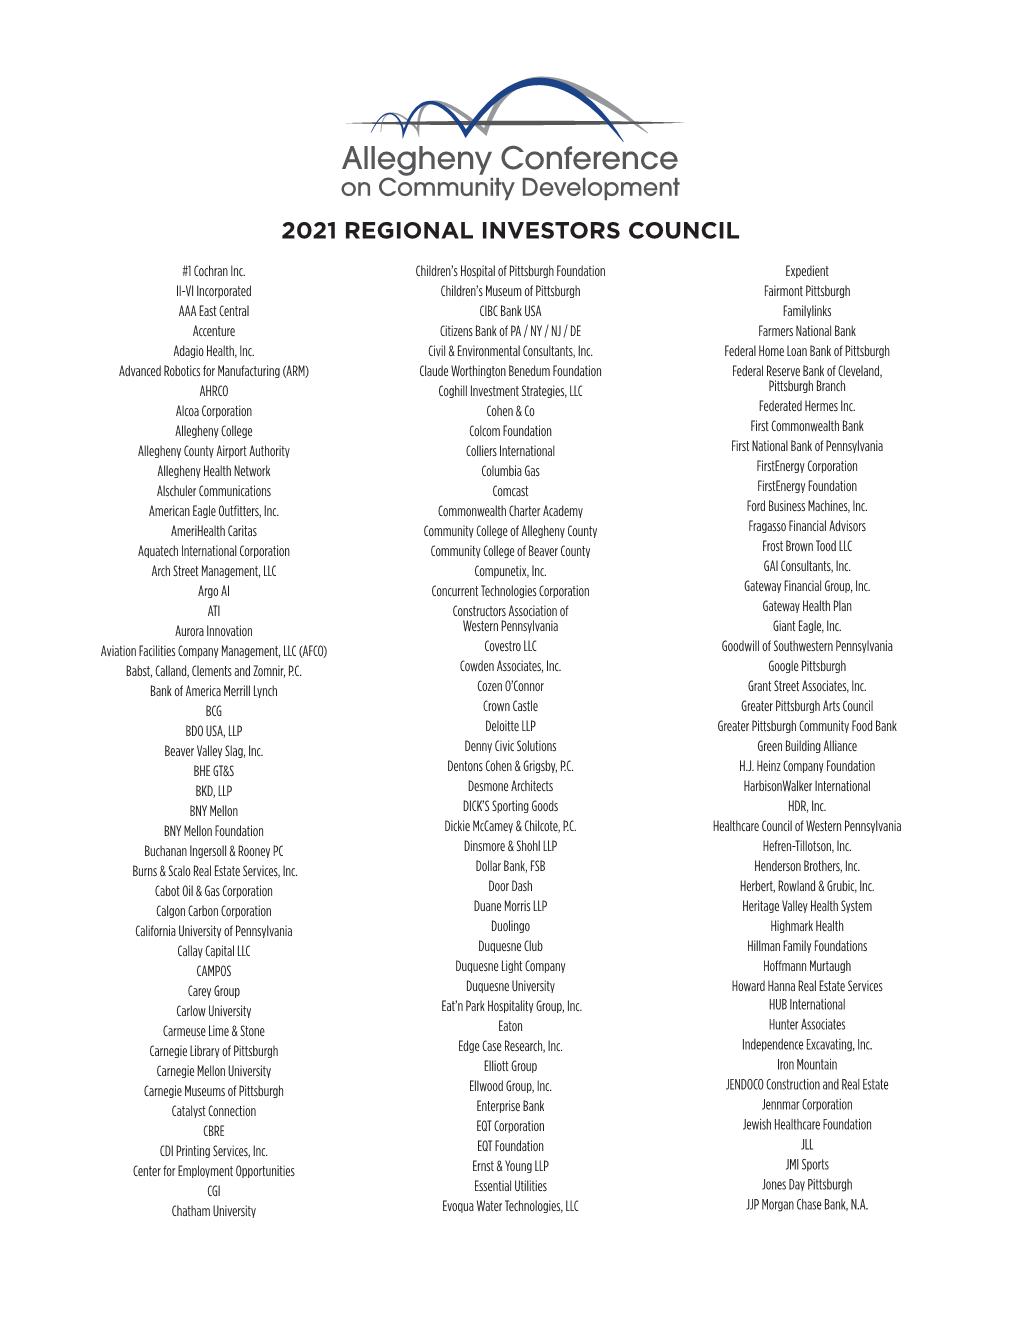 2021 Regional Investors Council